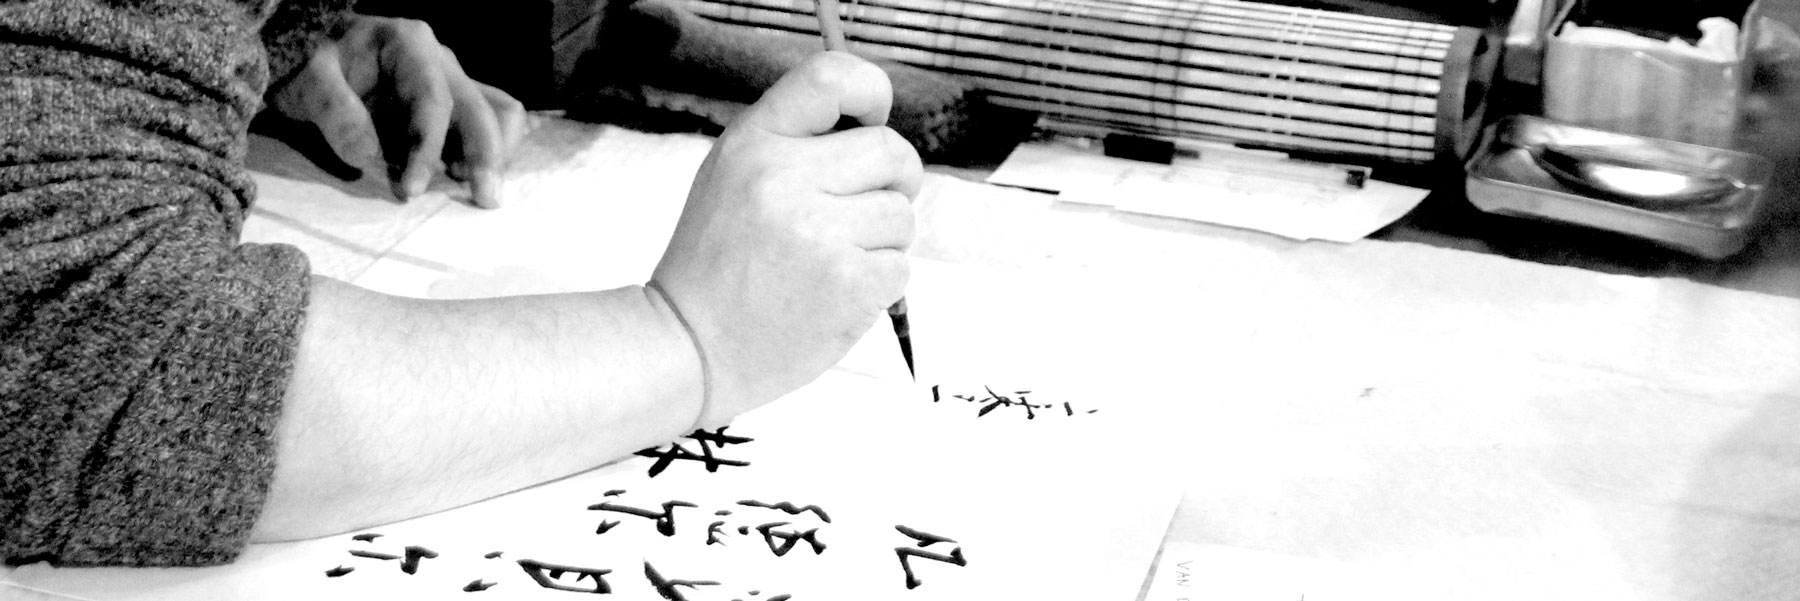 Kallgrafie Berlin Galerie Teesign77 chinese japanese ink sumi-e painting chinesische Tusche Malerei japanische sumi-e painting